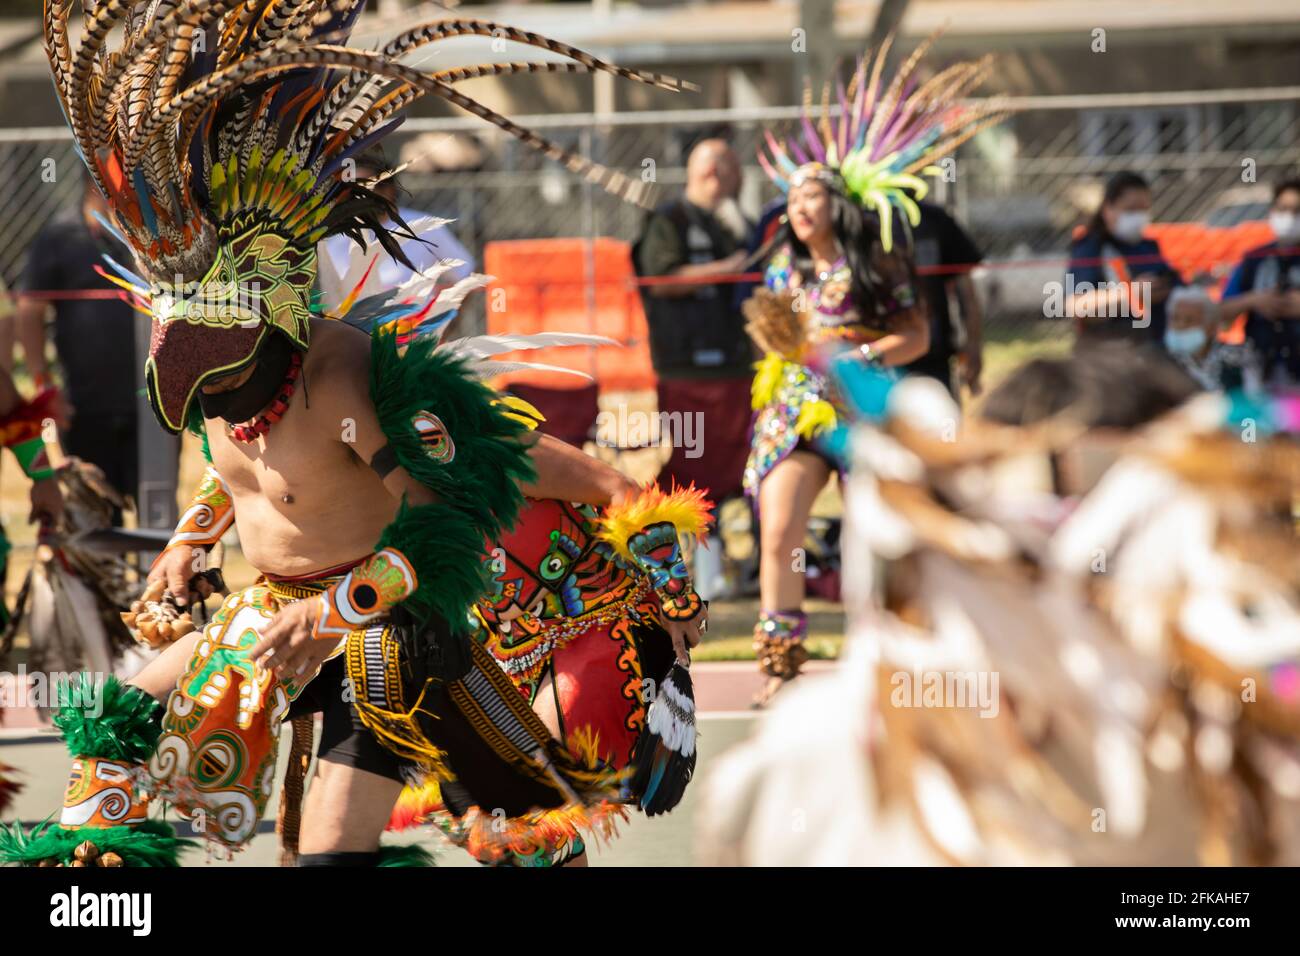 Baldwin Park, California, USA - April 18, 2021: Indigenous dancers perform in full regalia. Stock Photo